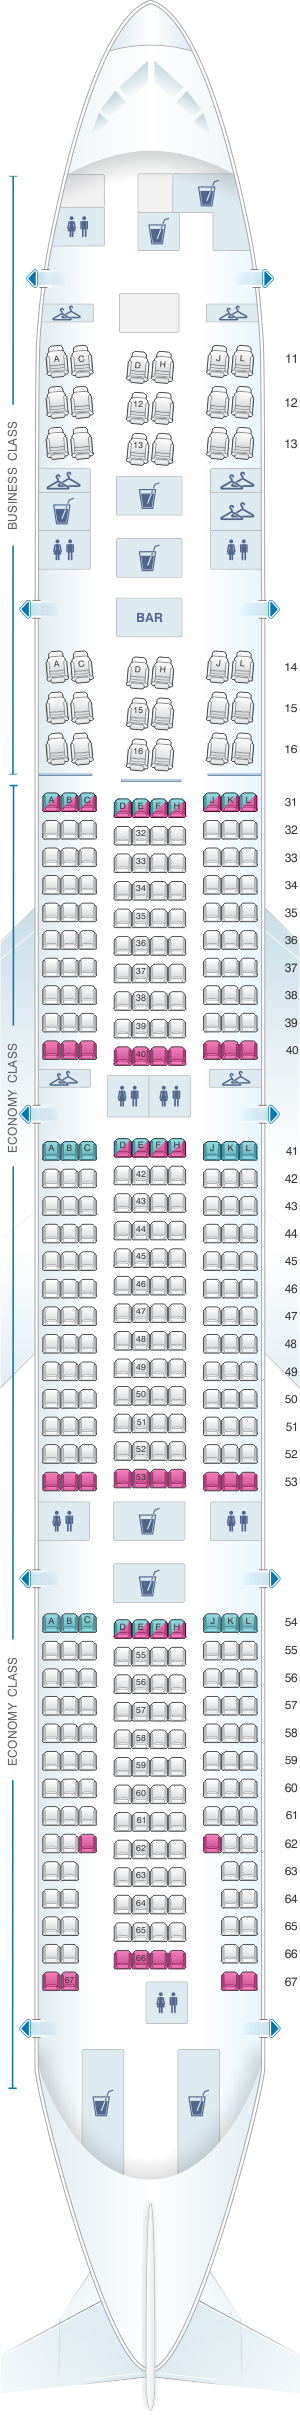 air china 777 seat map